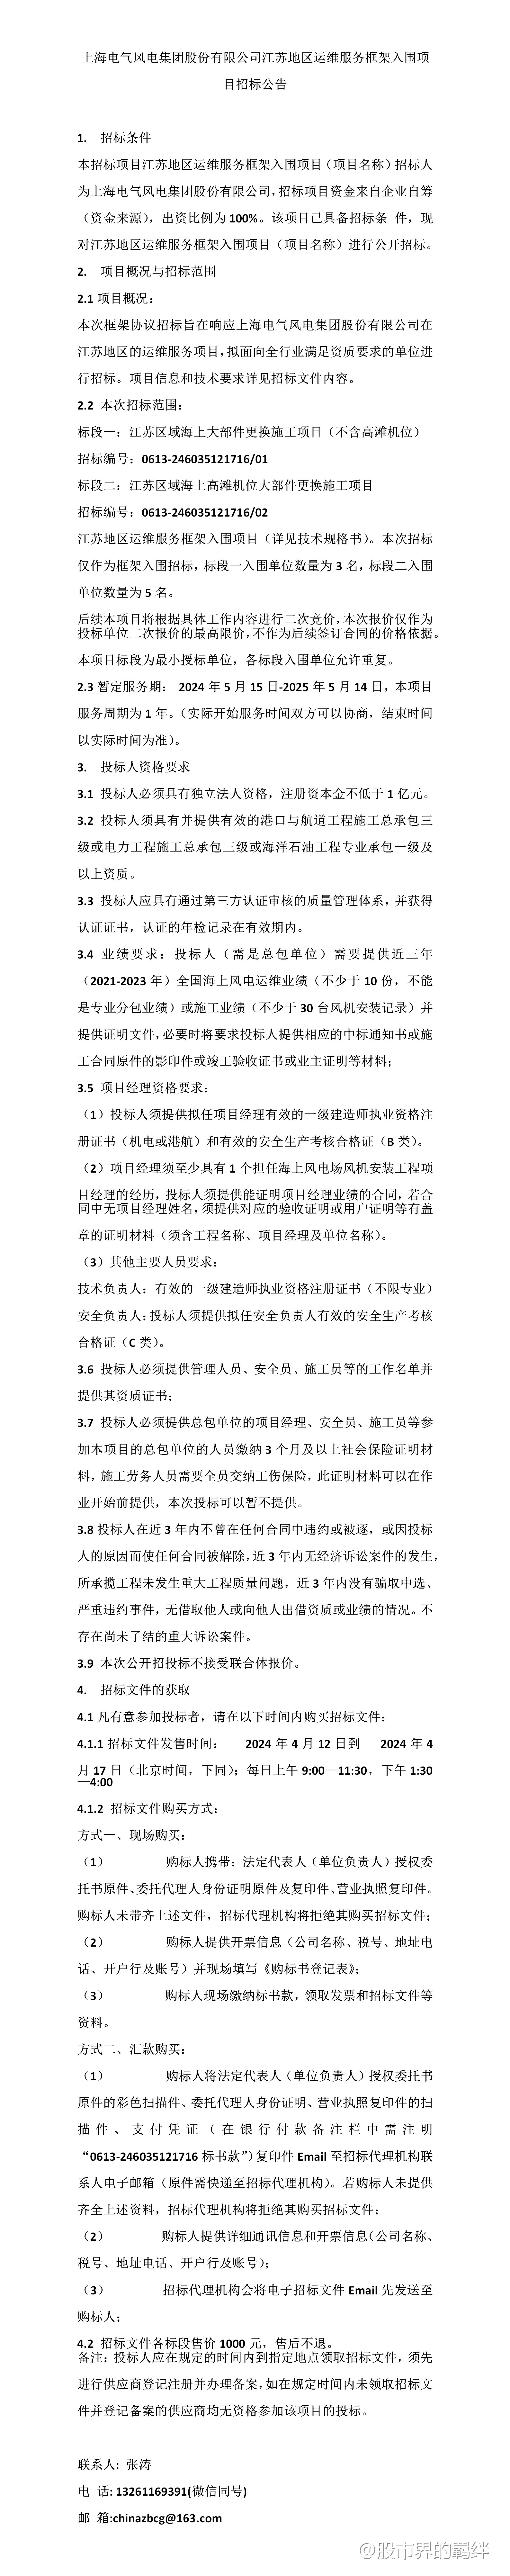 上海电气风电集团股份有限公司江苏地区运维服务框架入围项目招标